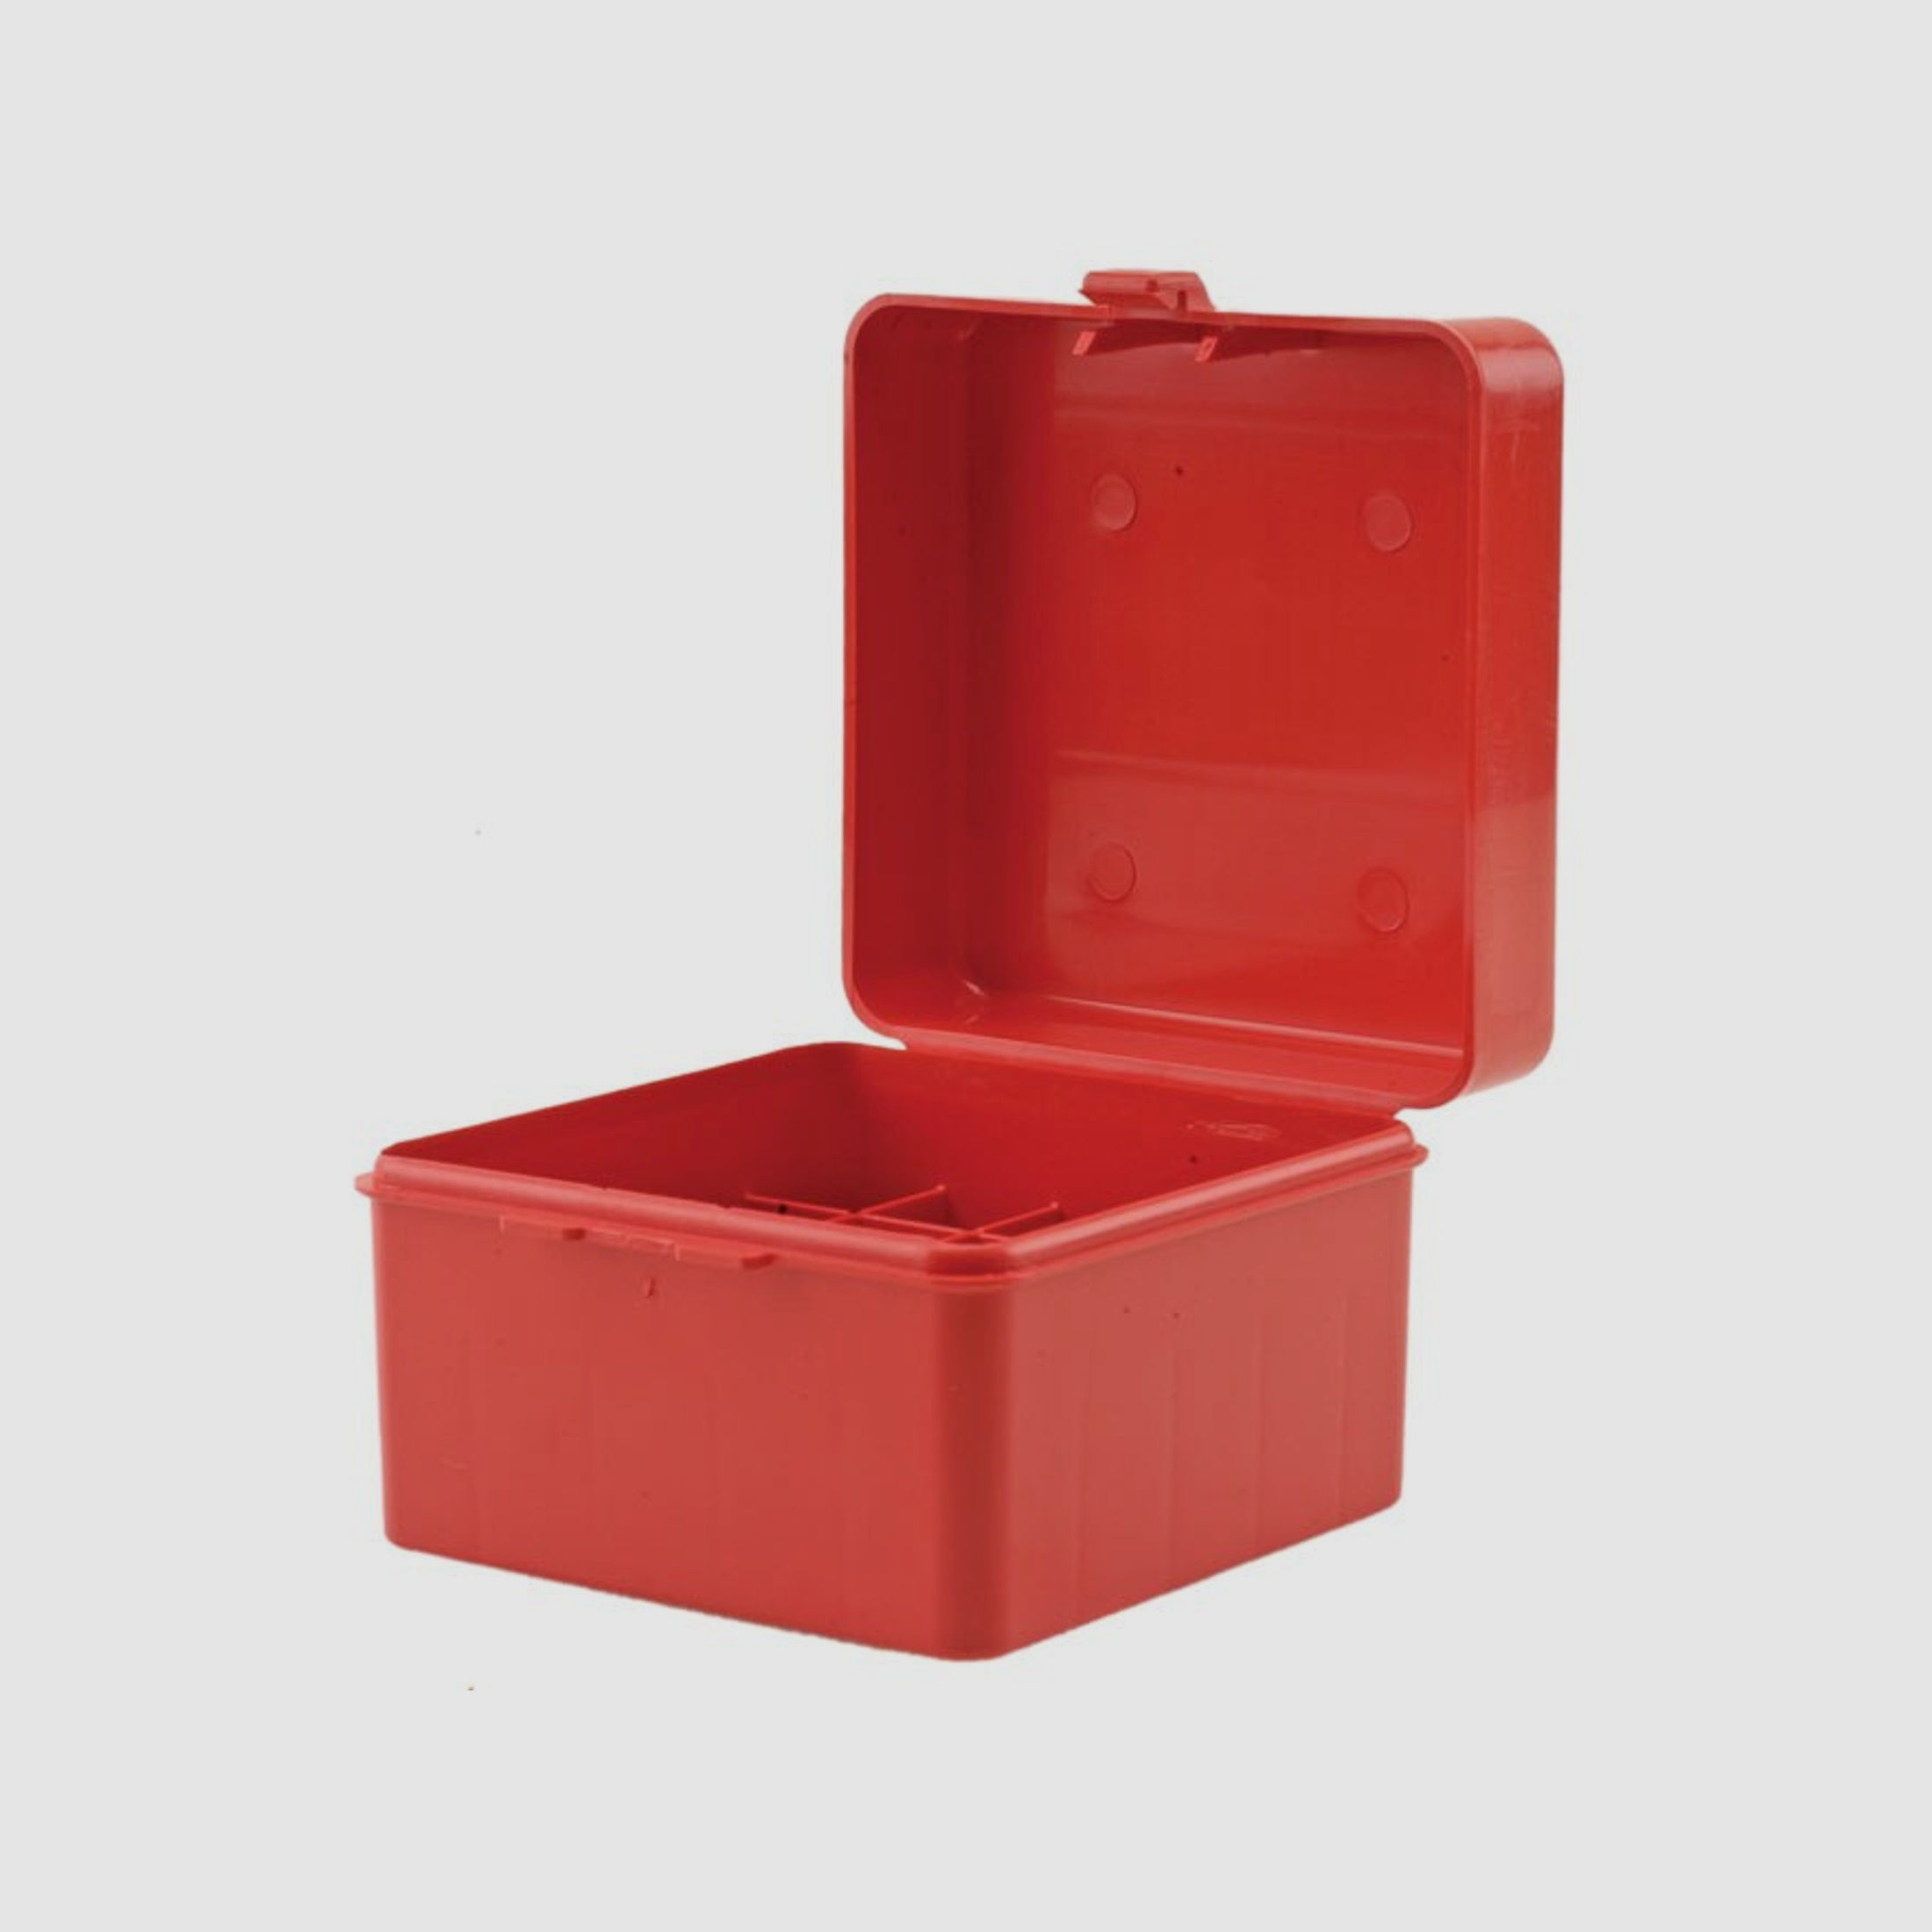 MTM Schrotpatronenbox S25-20-30 rot mit Klappdeckel für 25 Schrotpatronen .20